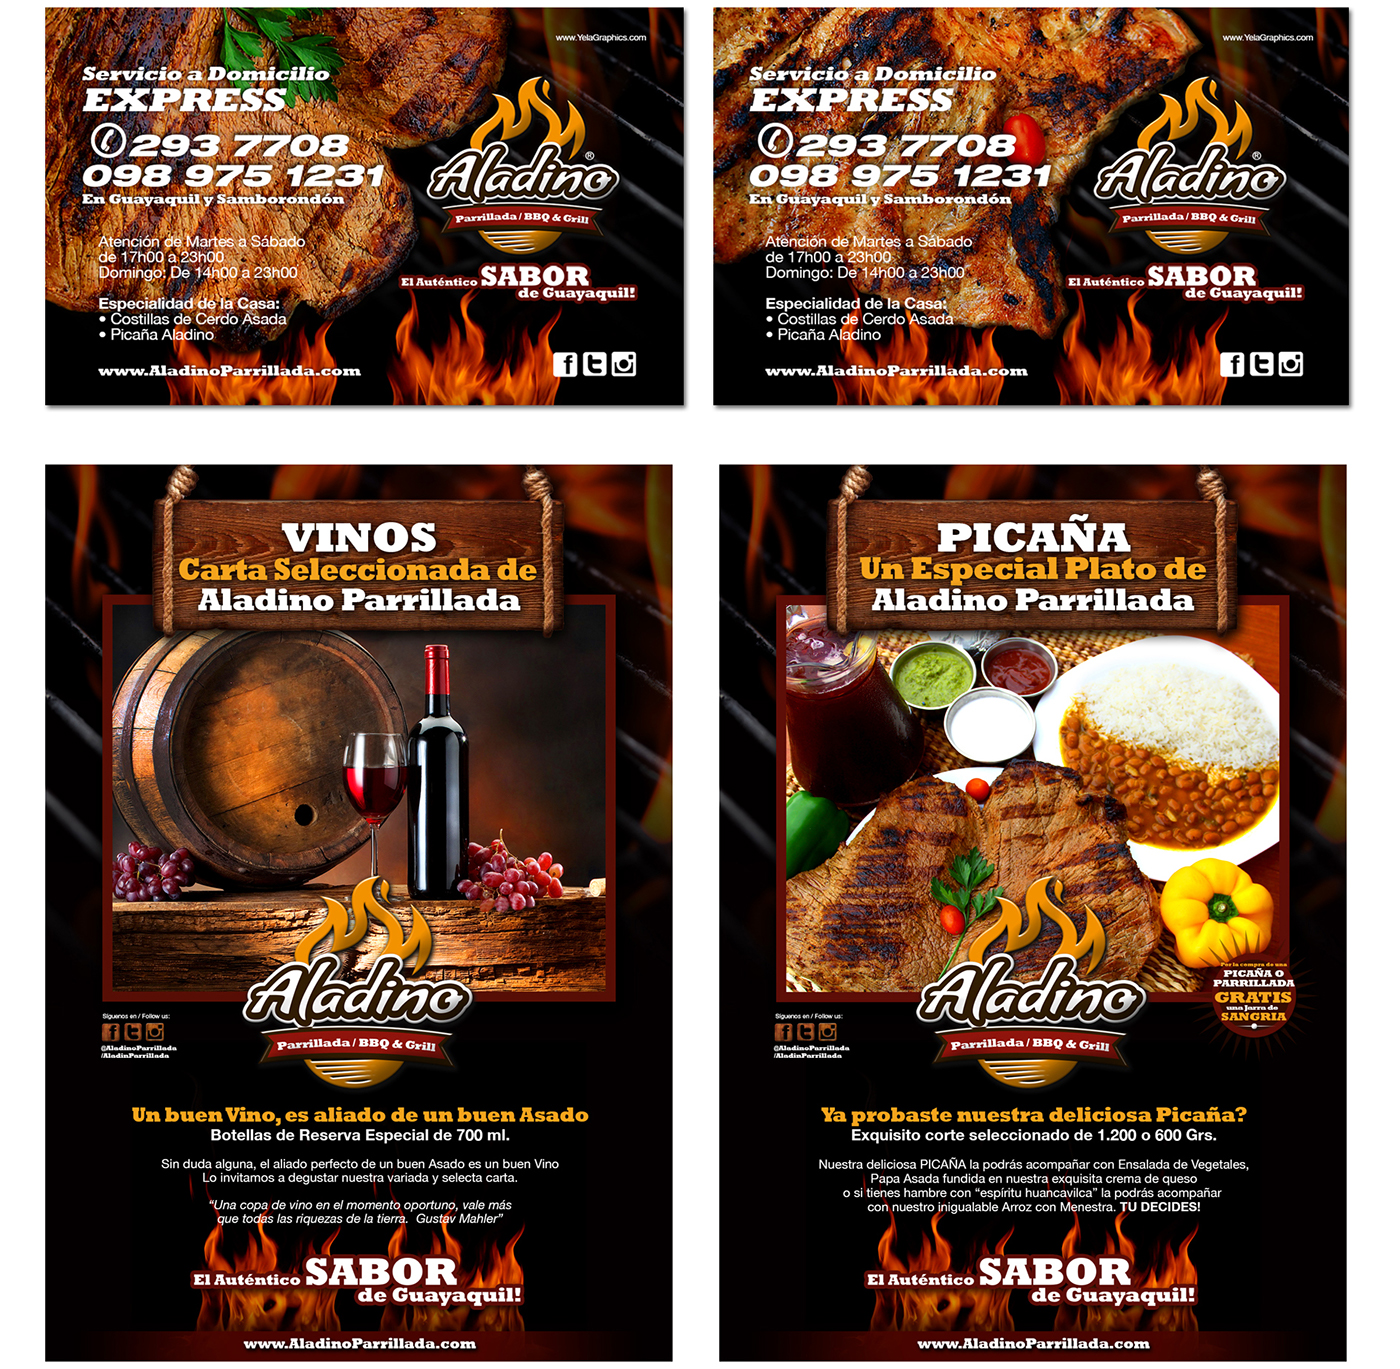 grill BBQ logo folleto brochure menu Ecuador guayaquil Tradició Traditional Food